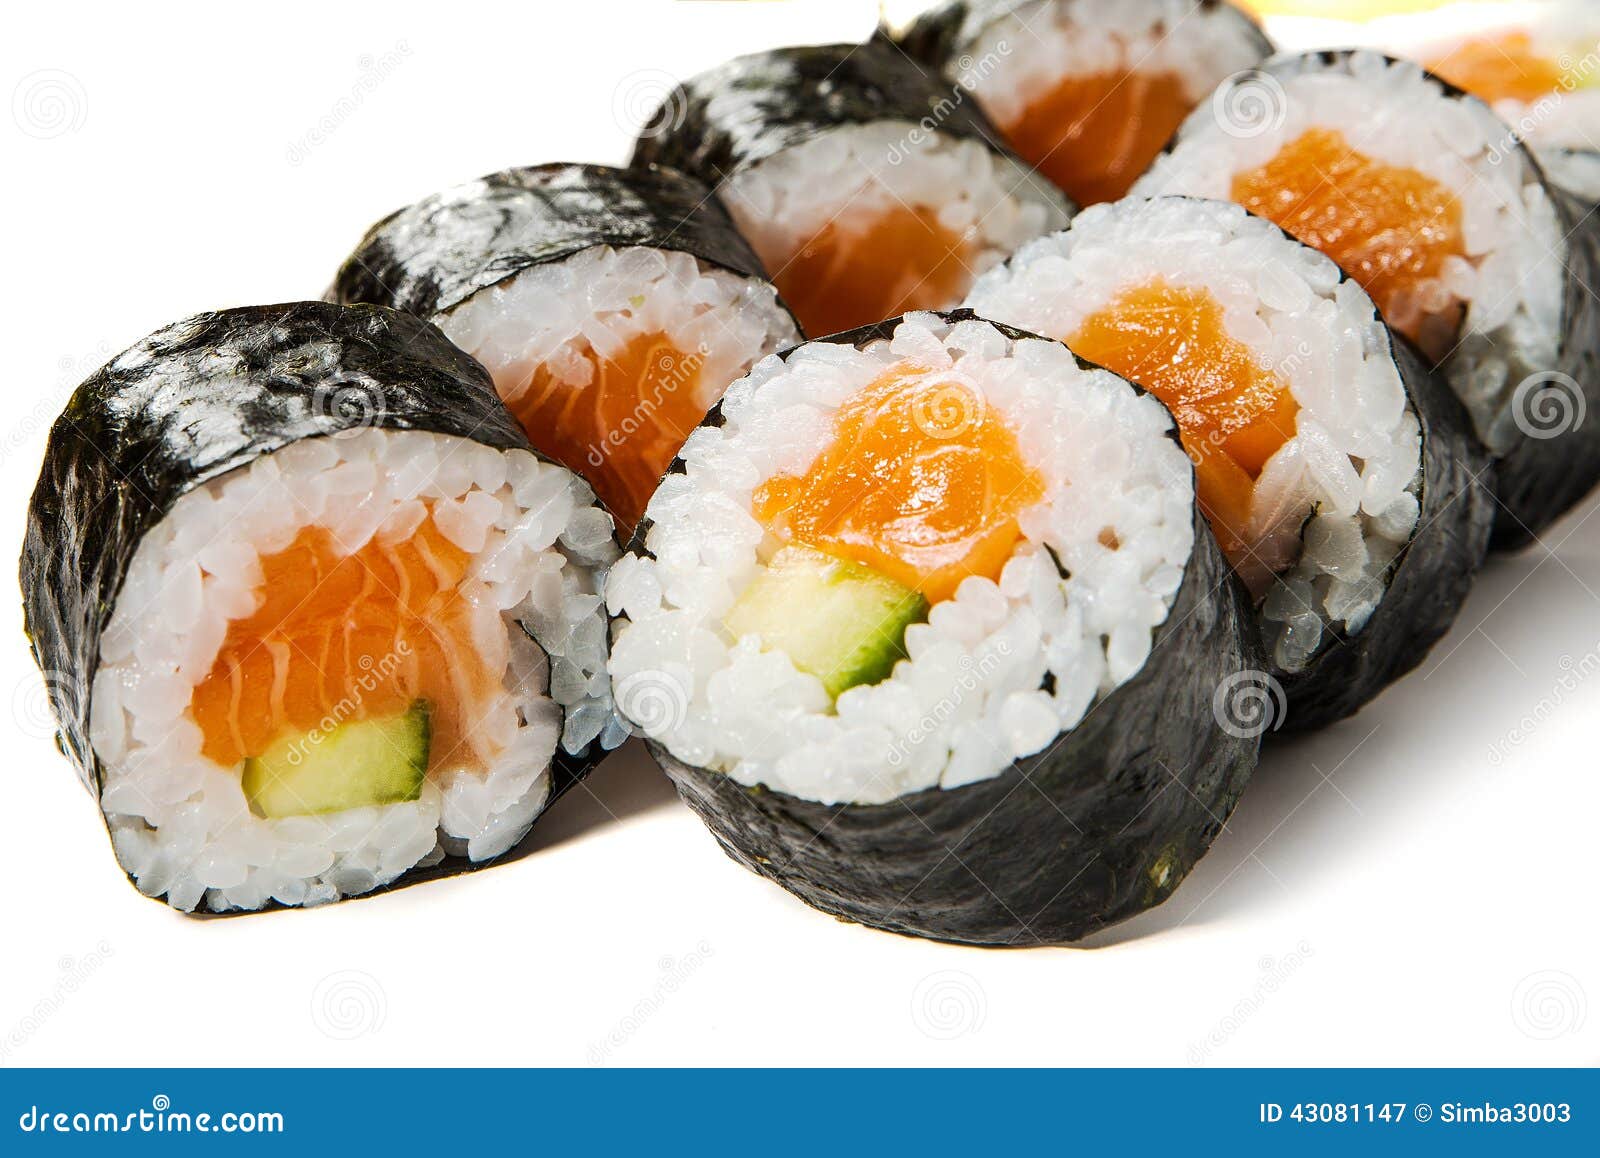 Sandy Klokje Niet verwacht Sake-kappa Maki- Sushi with Salmon and Cucumber Stock Image - Image of  fresh, exotic: 43081147